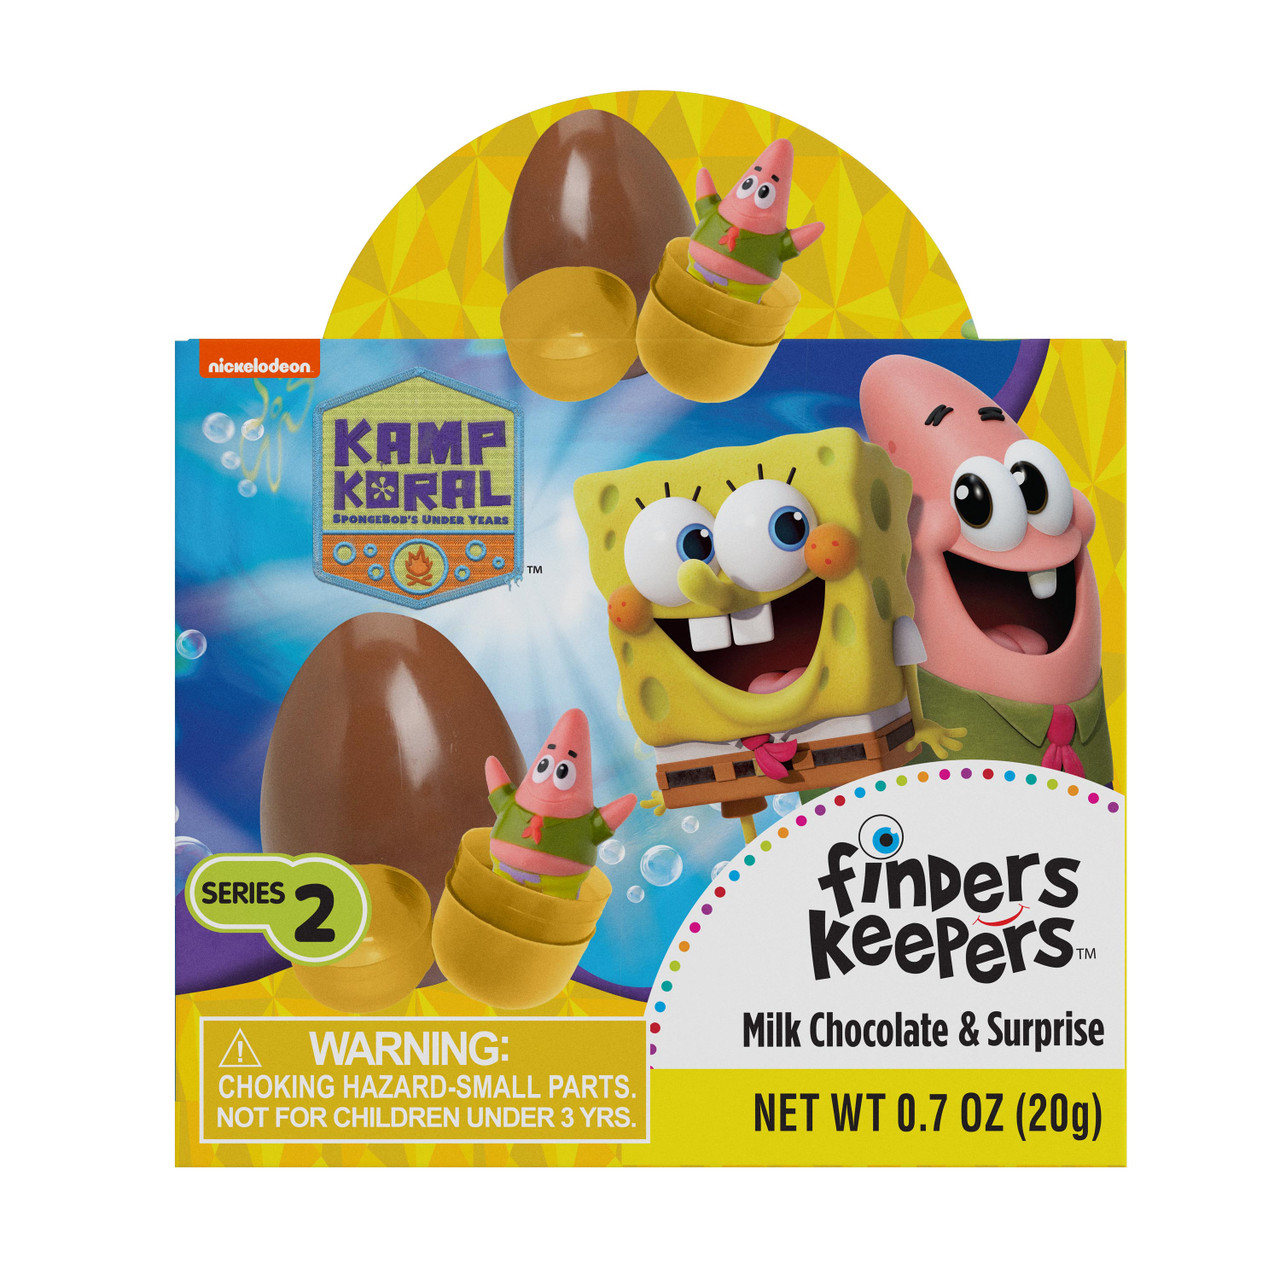 Finders Keepers SpongeBob SquarePants Series 2: Kamp Koral Multi-Packs